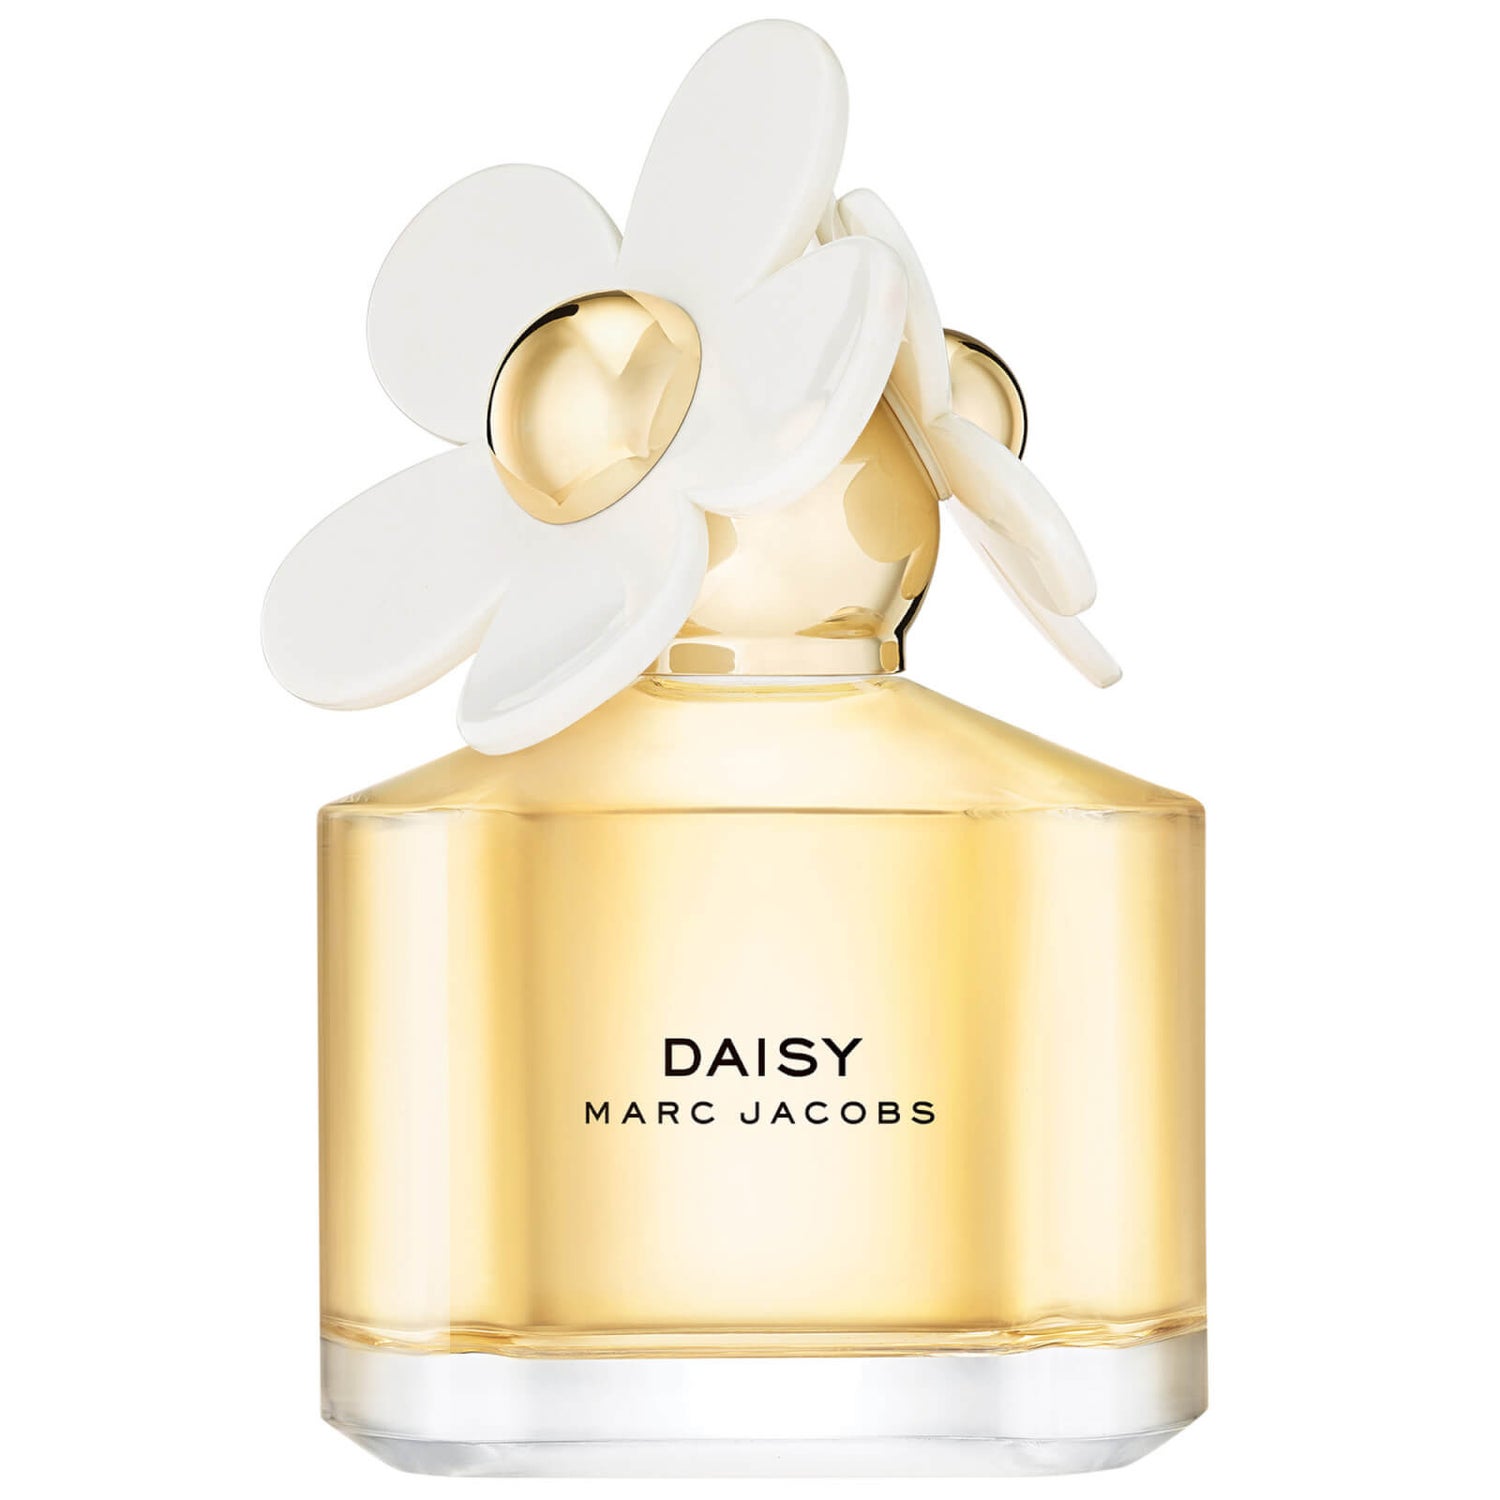 Chia sẻ với hơn 52 về michael kors perfume daisy  cdgdbentreeduvn